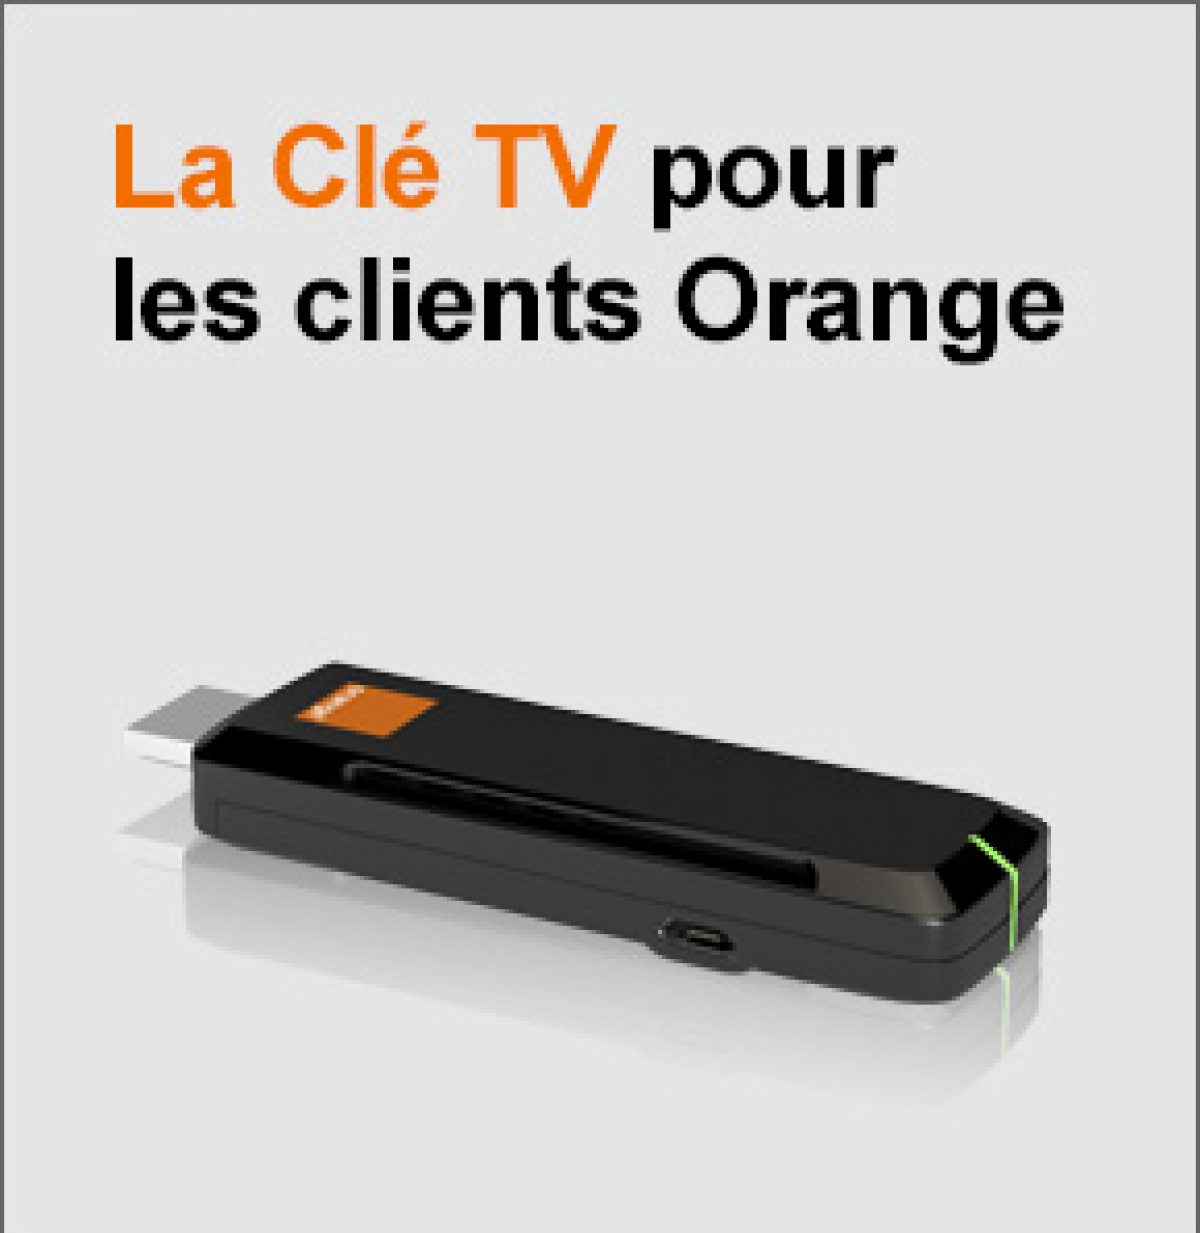 Orange annonce le lancement de « La Clé TV » pour 39€